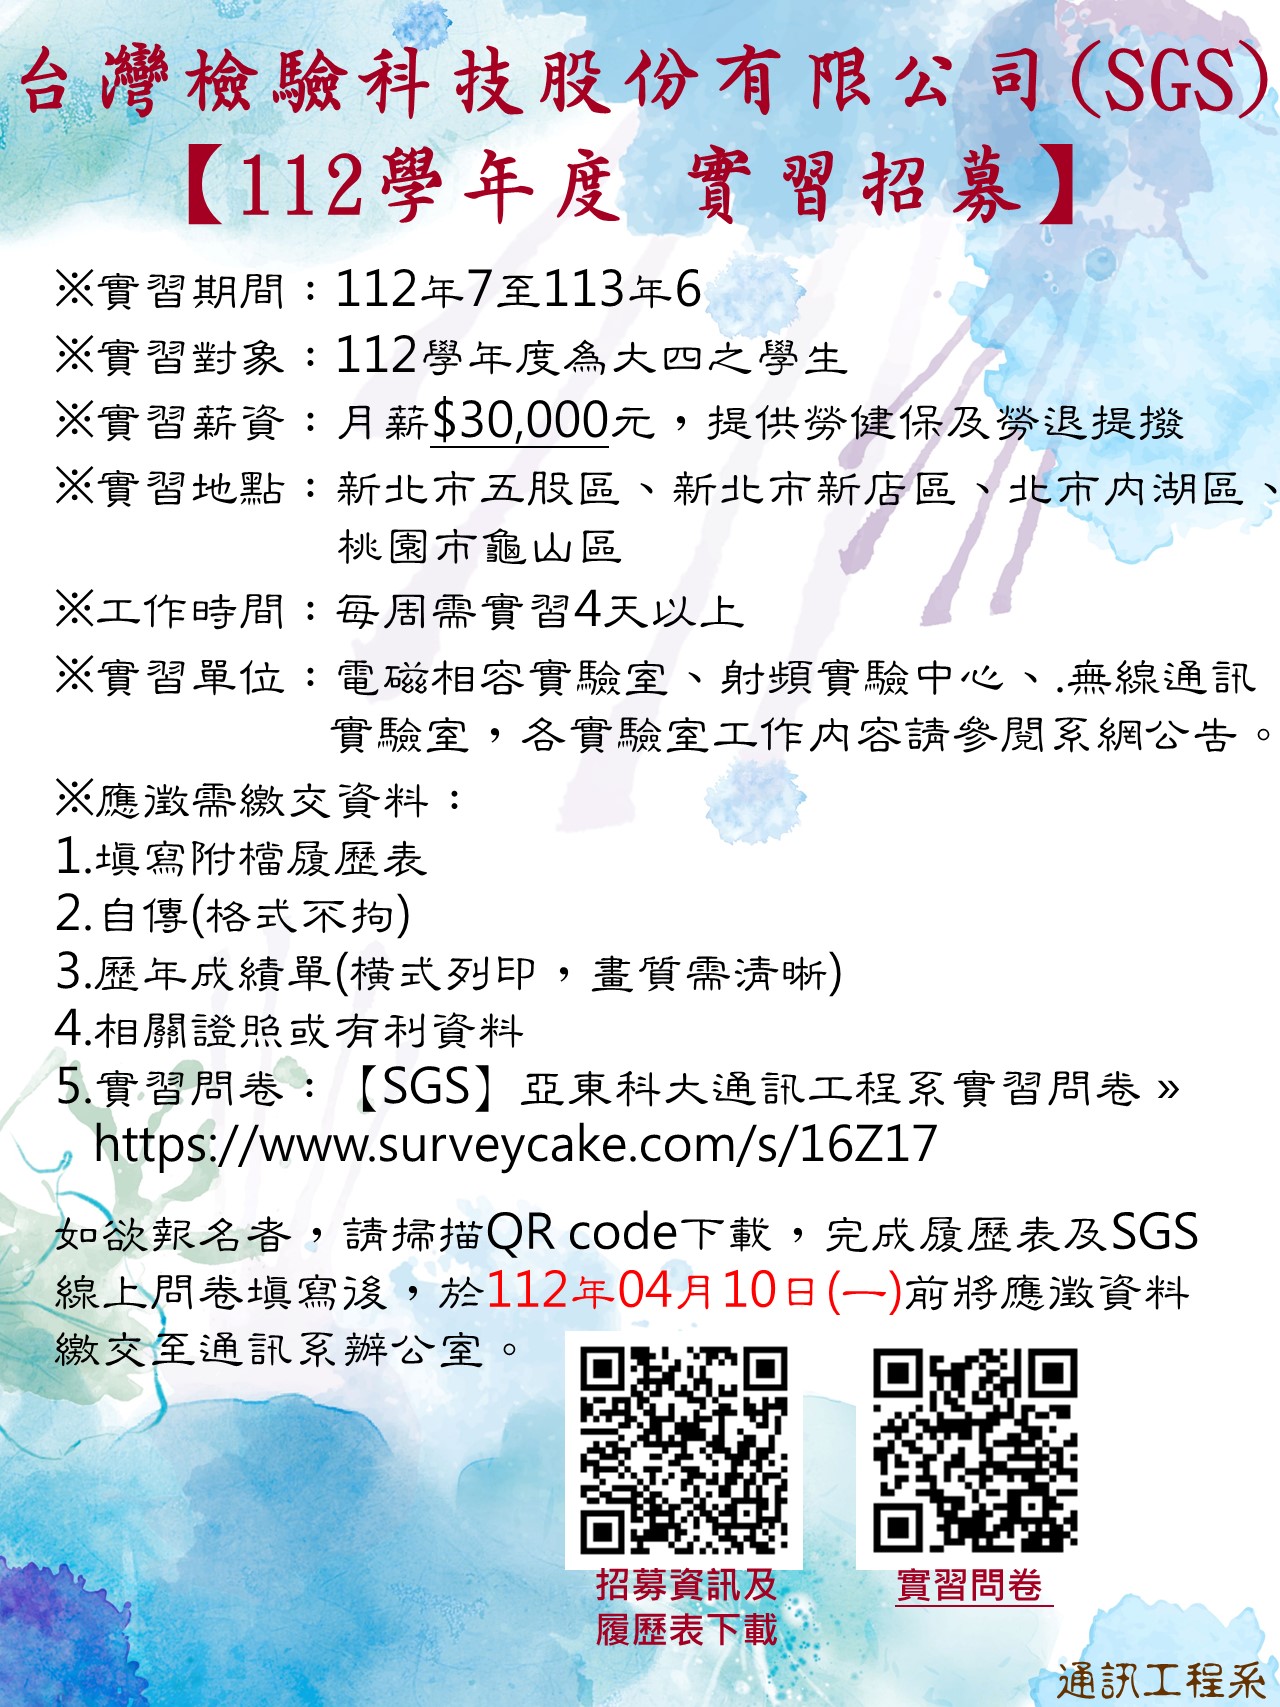 【112學年度實習報名】台灣檢驗科技股份有限公司(SGS)(另開新視窗)